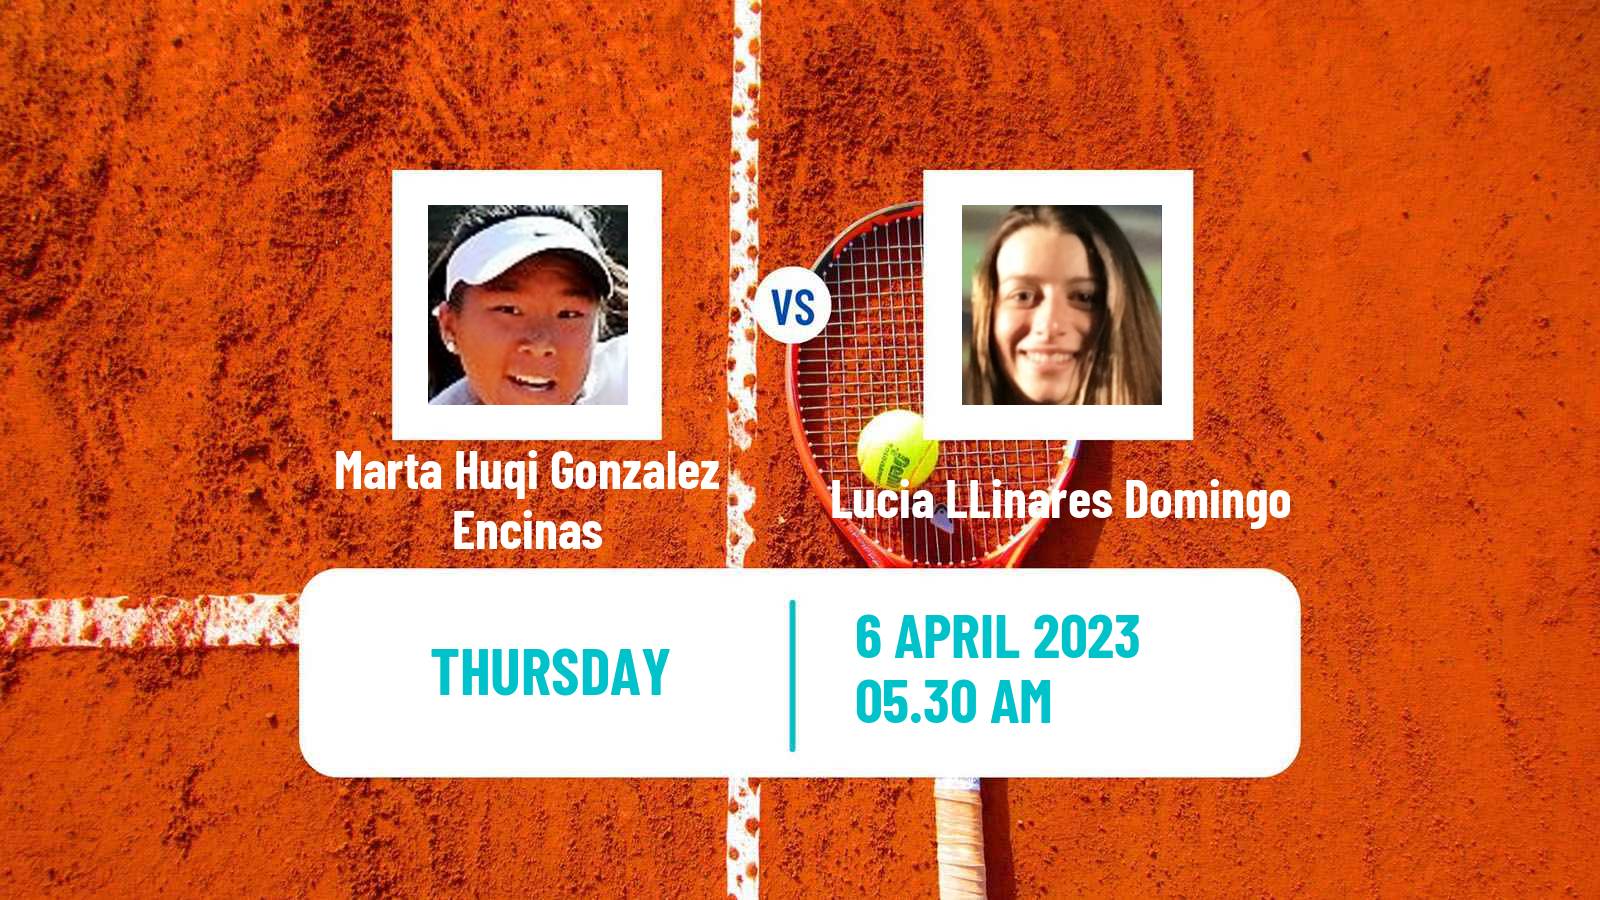 Tennis ITF Tournaments Marta Huqi Gonzalez Encinas - Lucia LLinares Domingo